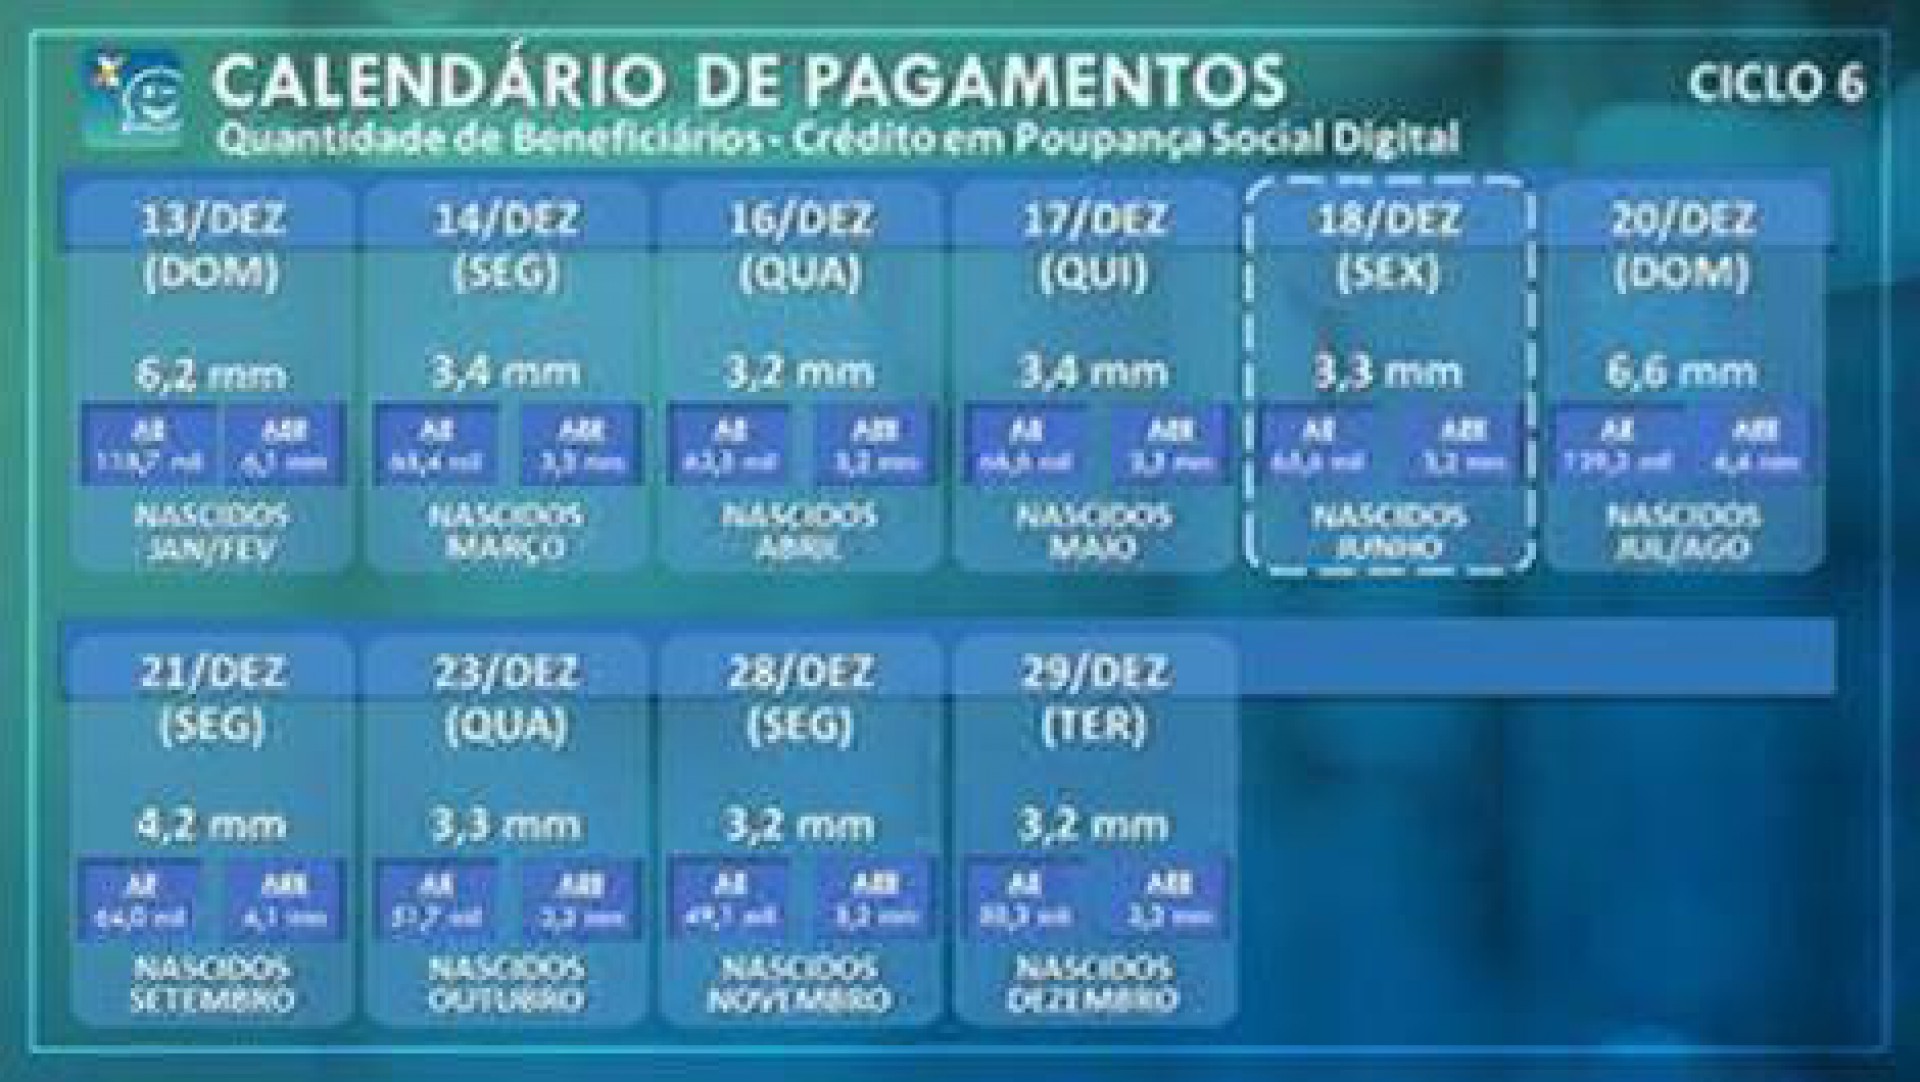 Calendário de pagamentos do Ciclo 6 do auxílio emergencial - Divulgação/Caixa